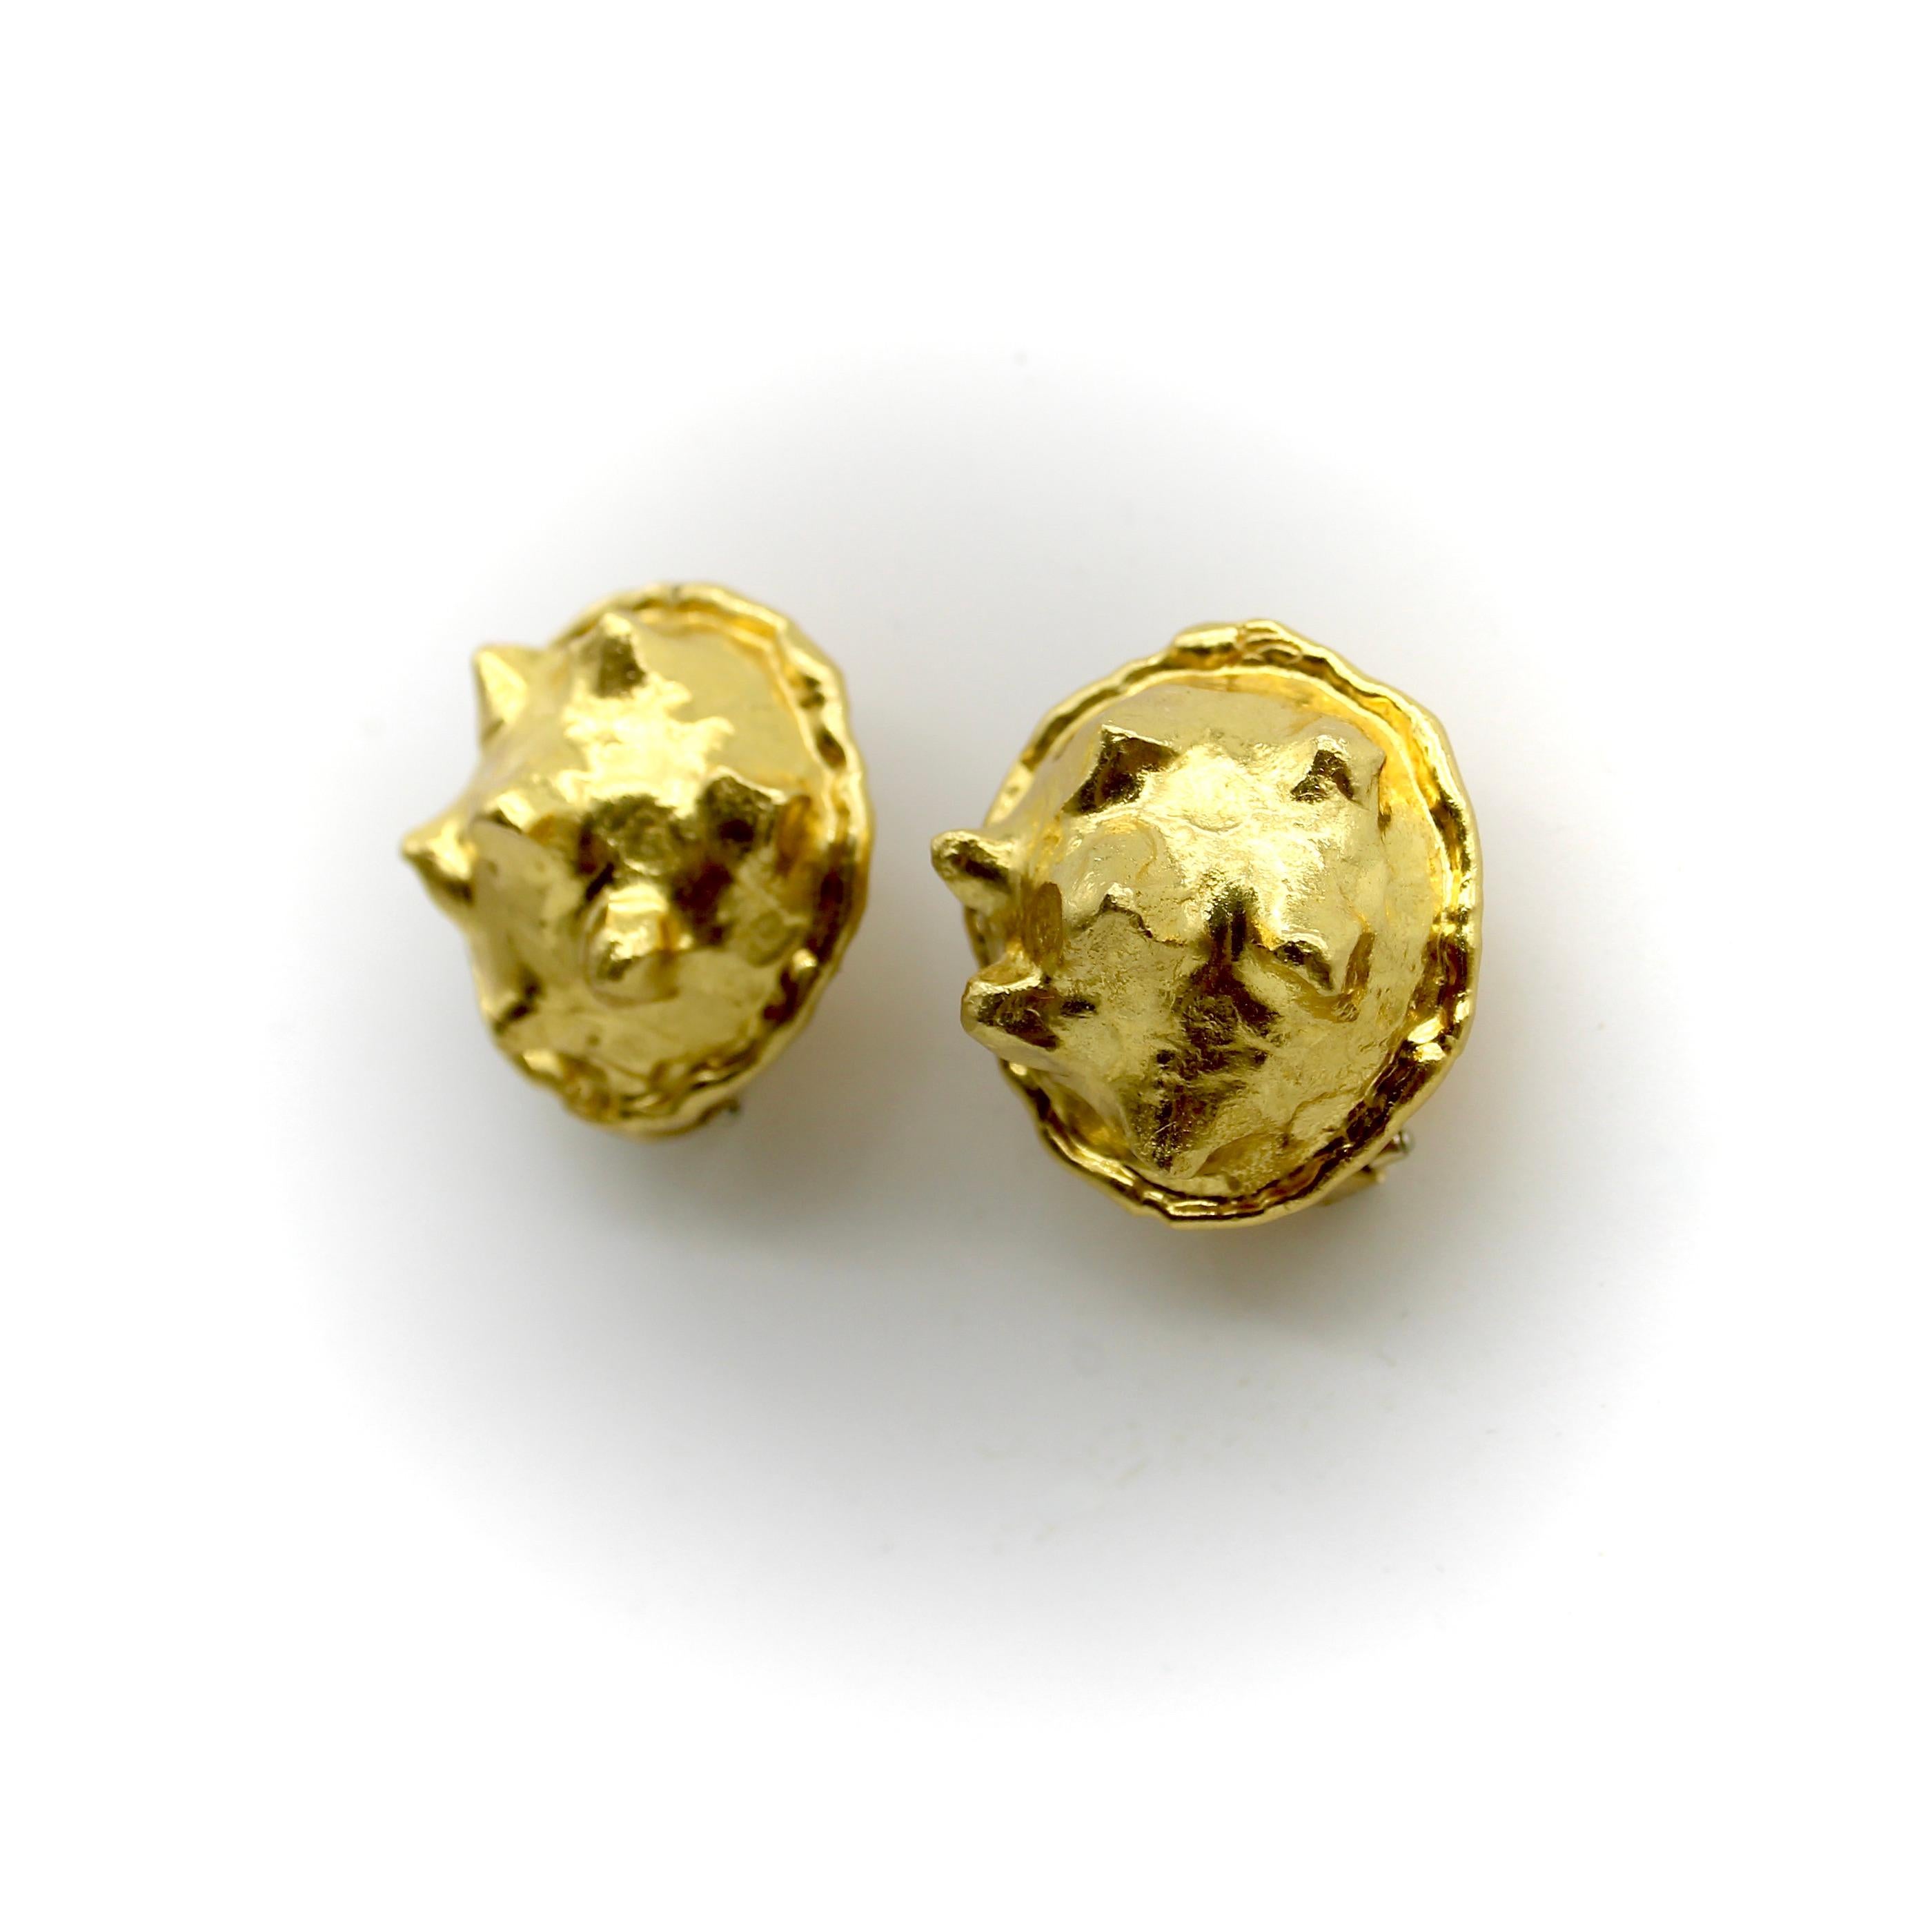 Diese Ohrringe aus 22 Karat Gold wurden von Jean Mahie entworfen, dem Pseudonym der französischen Künstler Jacline und Jean Marie Mazard. Die einzigartigen Ohrringe haben die Form von Knötchen mit dreieckigen Spitzen, die über die gewölbte